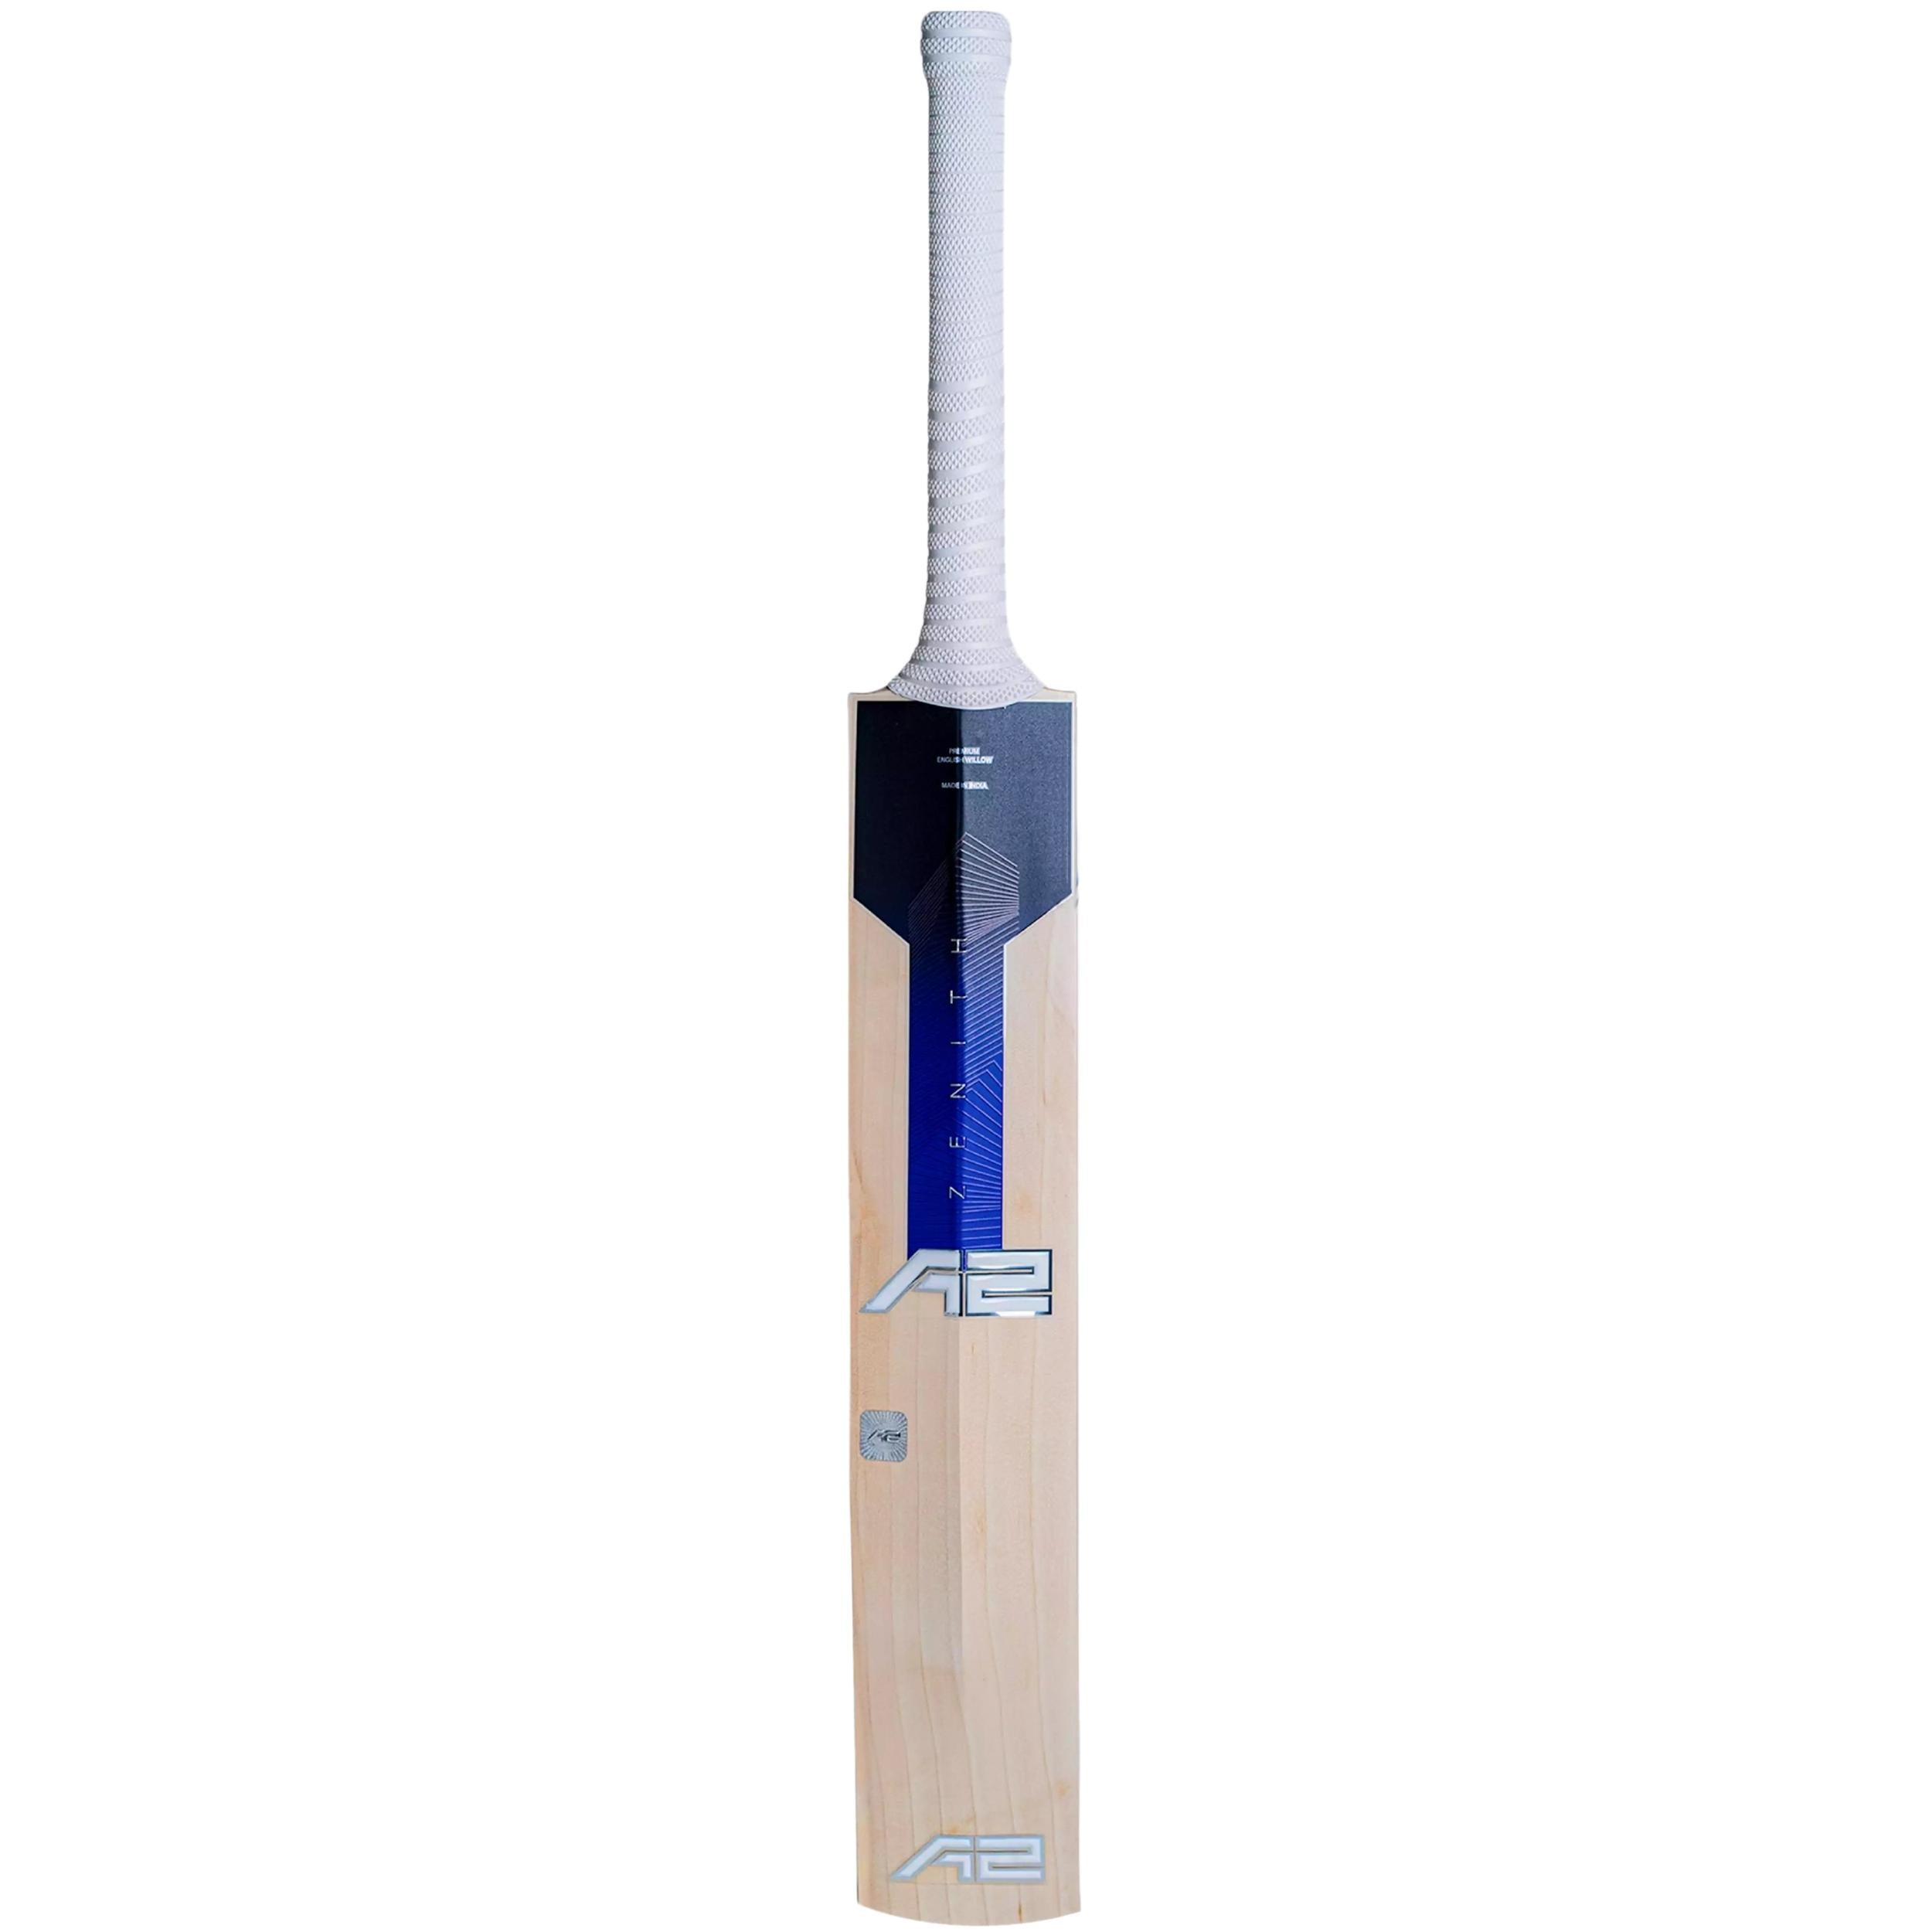 A2 Zenith Grade-1 English Willow Cricket Bat